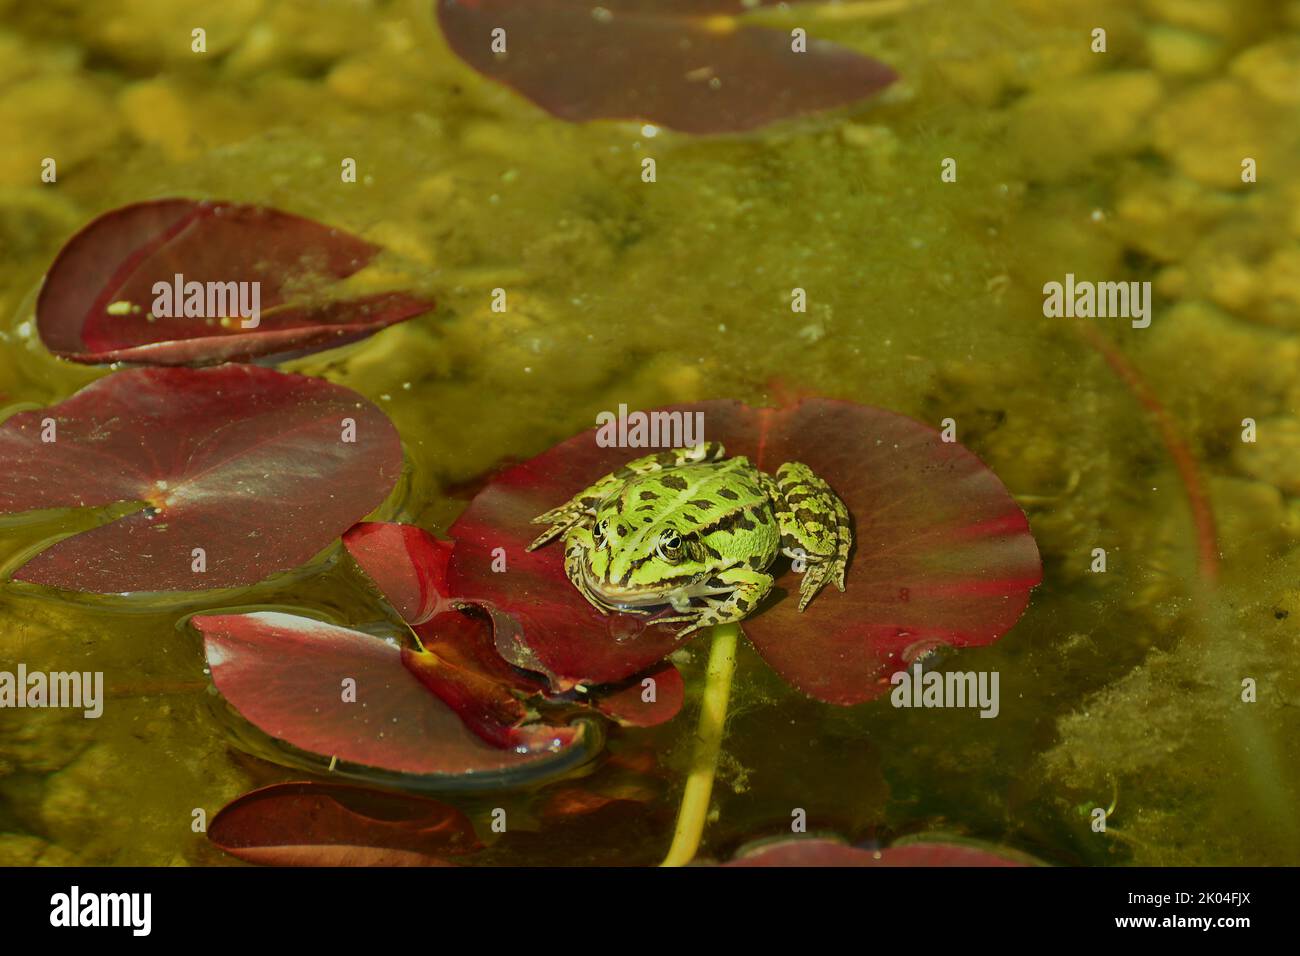 Rana de la piscina (Pelophylax lessonae) de pie sobre una planta acuática en un estanque Foto de stock